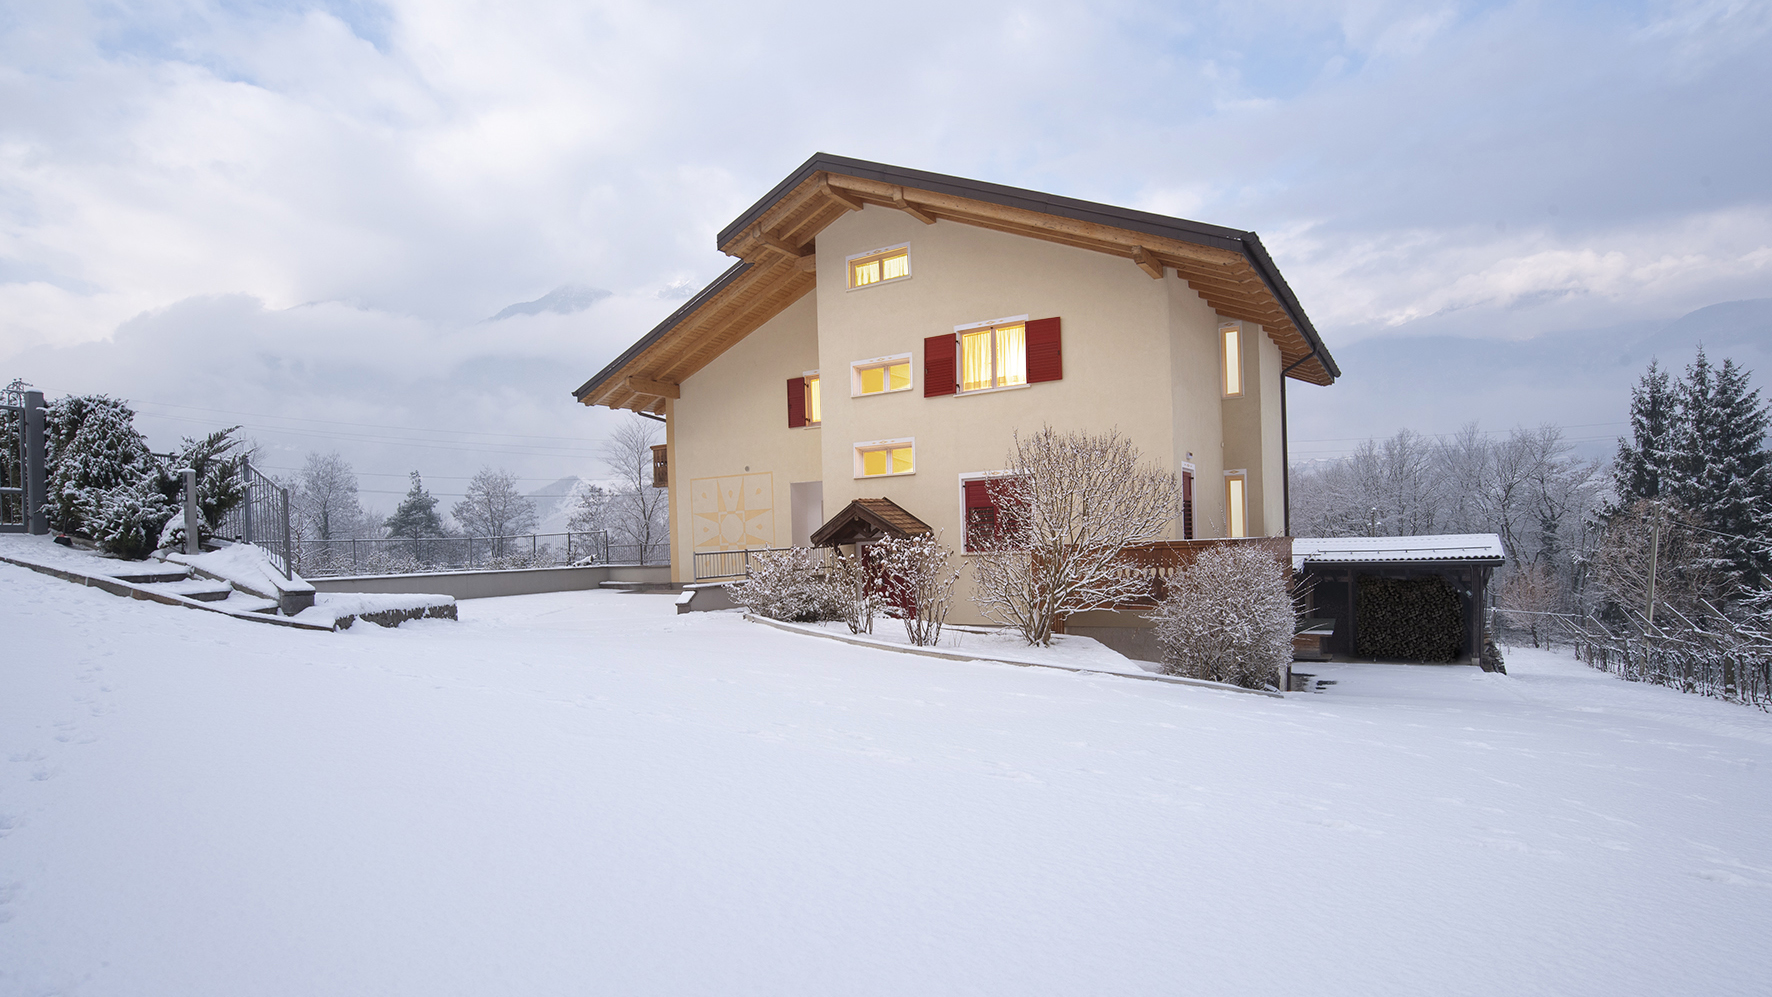 Vacanze invernali | B&B Pra da Lares | Val di Non Trentino